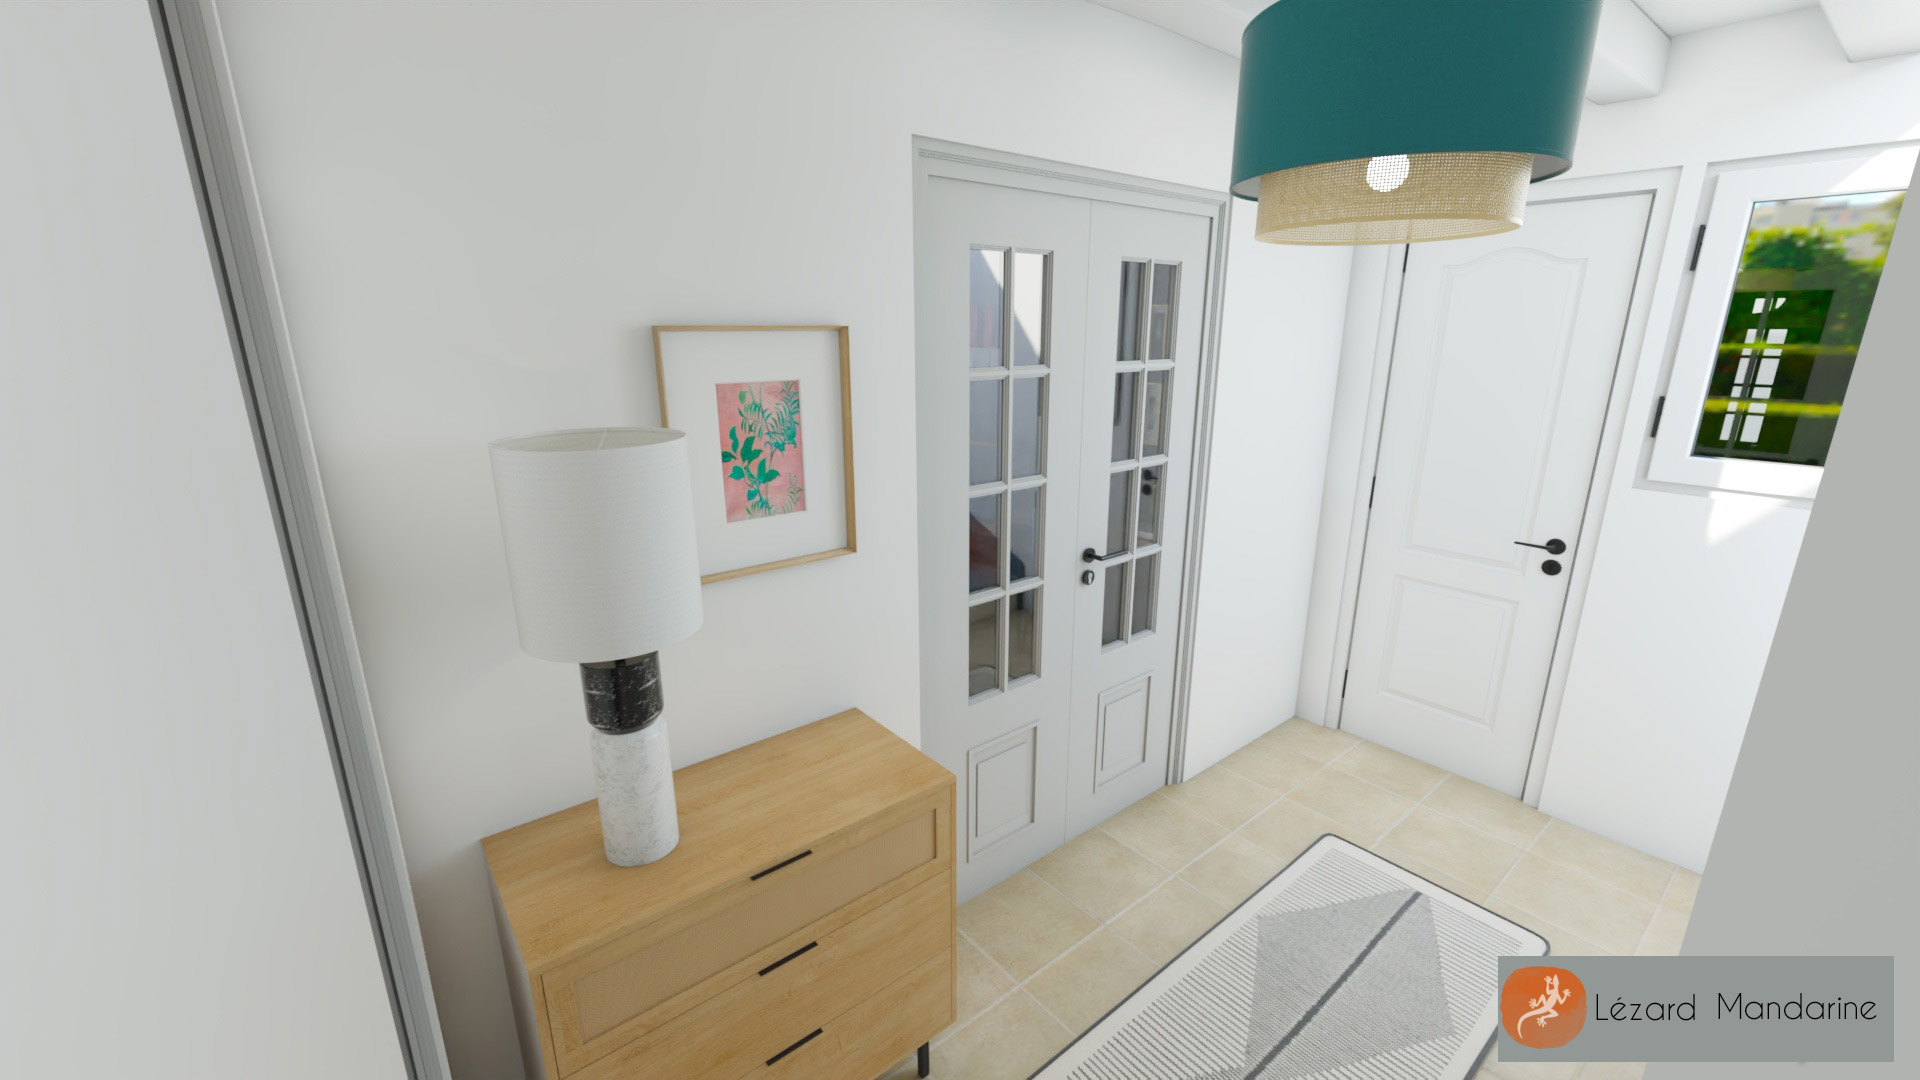 Visuels Déco 3D pour une villa à Crolles - Lézard Mandarine